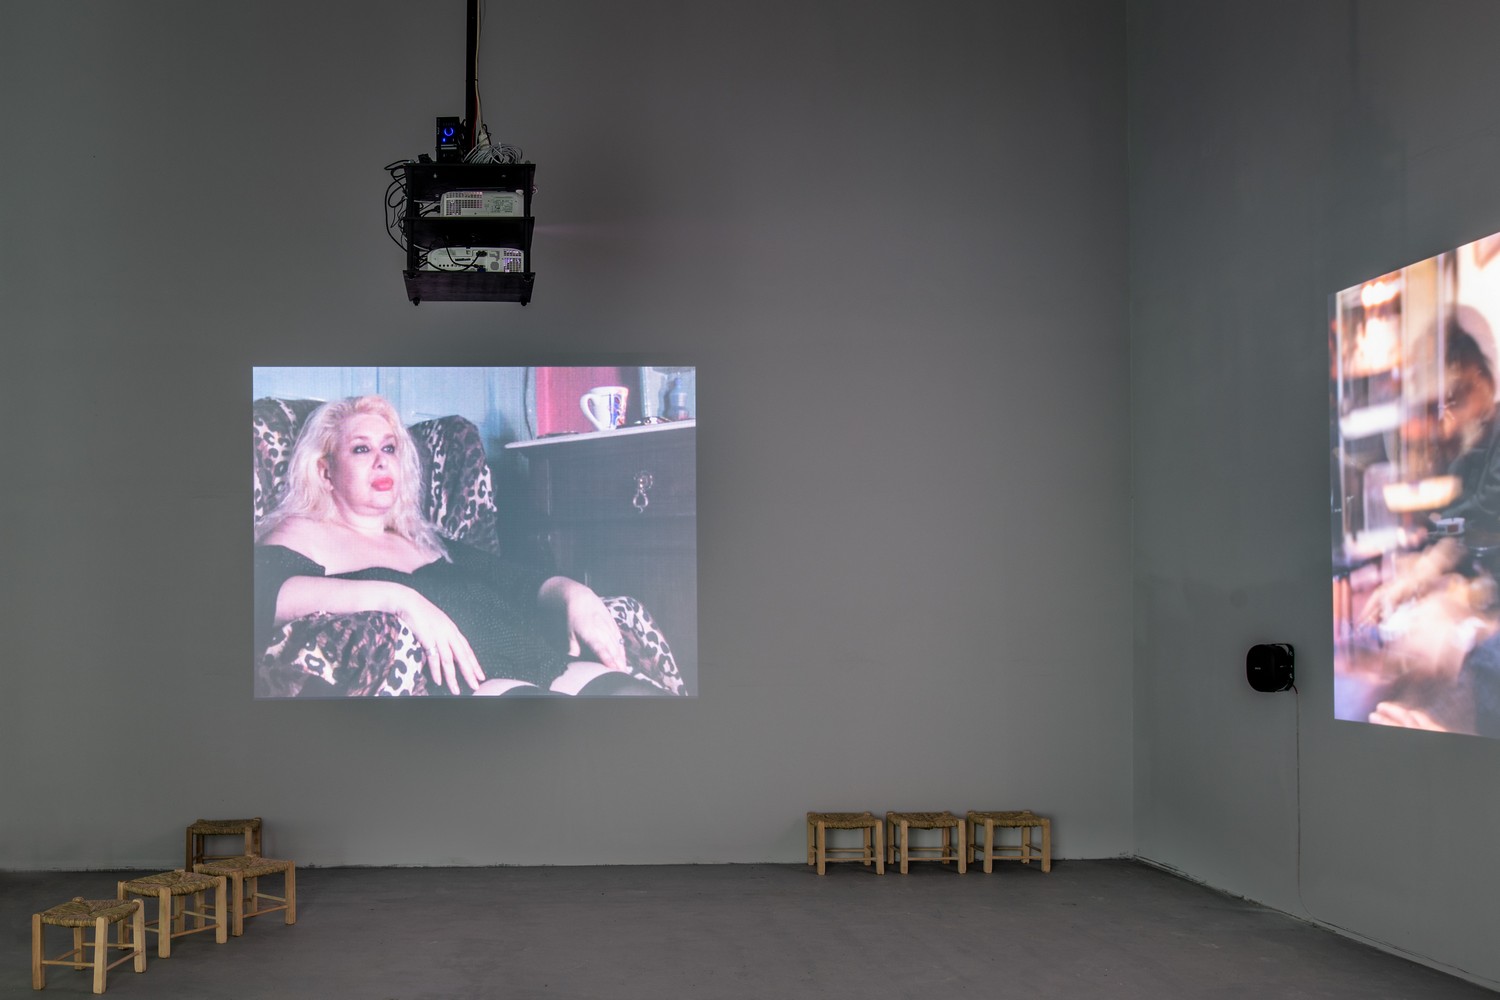 Εύα Στεφανή, Παράθυρο (από το έργο Ανάγλυφα), 2019 Ψηφιακό βίντεο, έγχρωμο, χωρίς ήχο, 2΄. Άποψη εγκατάστασης. Ελληνικό περίπτερο στην 58η Διεθνή Έκθεση Τέχνης―La Biennale di Venezia. Φωτογραφία: Ugo Carmeni Εύα Στεφανή, Μόνο άνδρες (από το έργο Ανάγλυφα), 2019 16 mm, Hi8, VHS-C, HDV, έγχρωμο, με ήχο, 70΄. Άποψη εγκατάστασης. Ελληνικό περίπτερο στην 58η Διεθνή Έκθεση Τέχνης―La Biennale di Venezia. Φωτογραφία: Ugo Carmeni